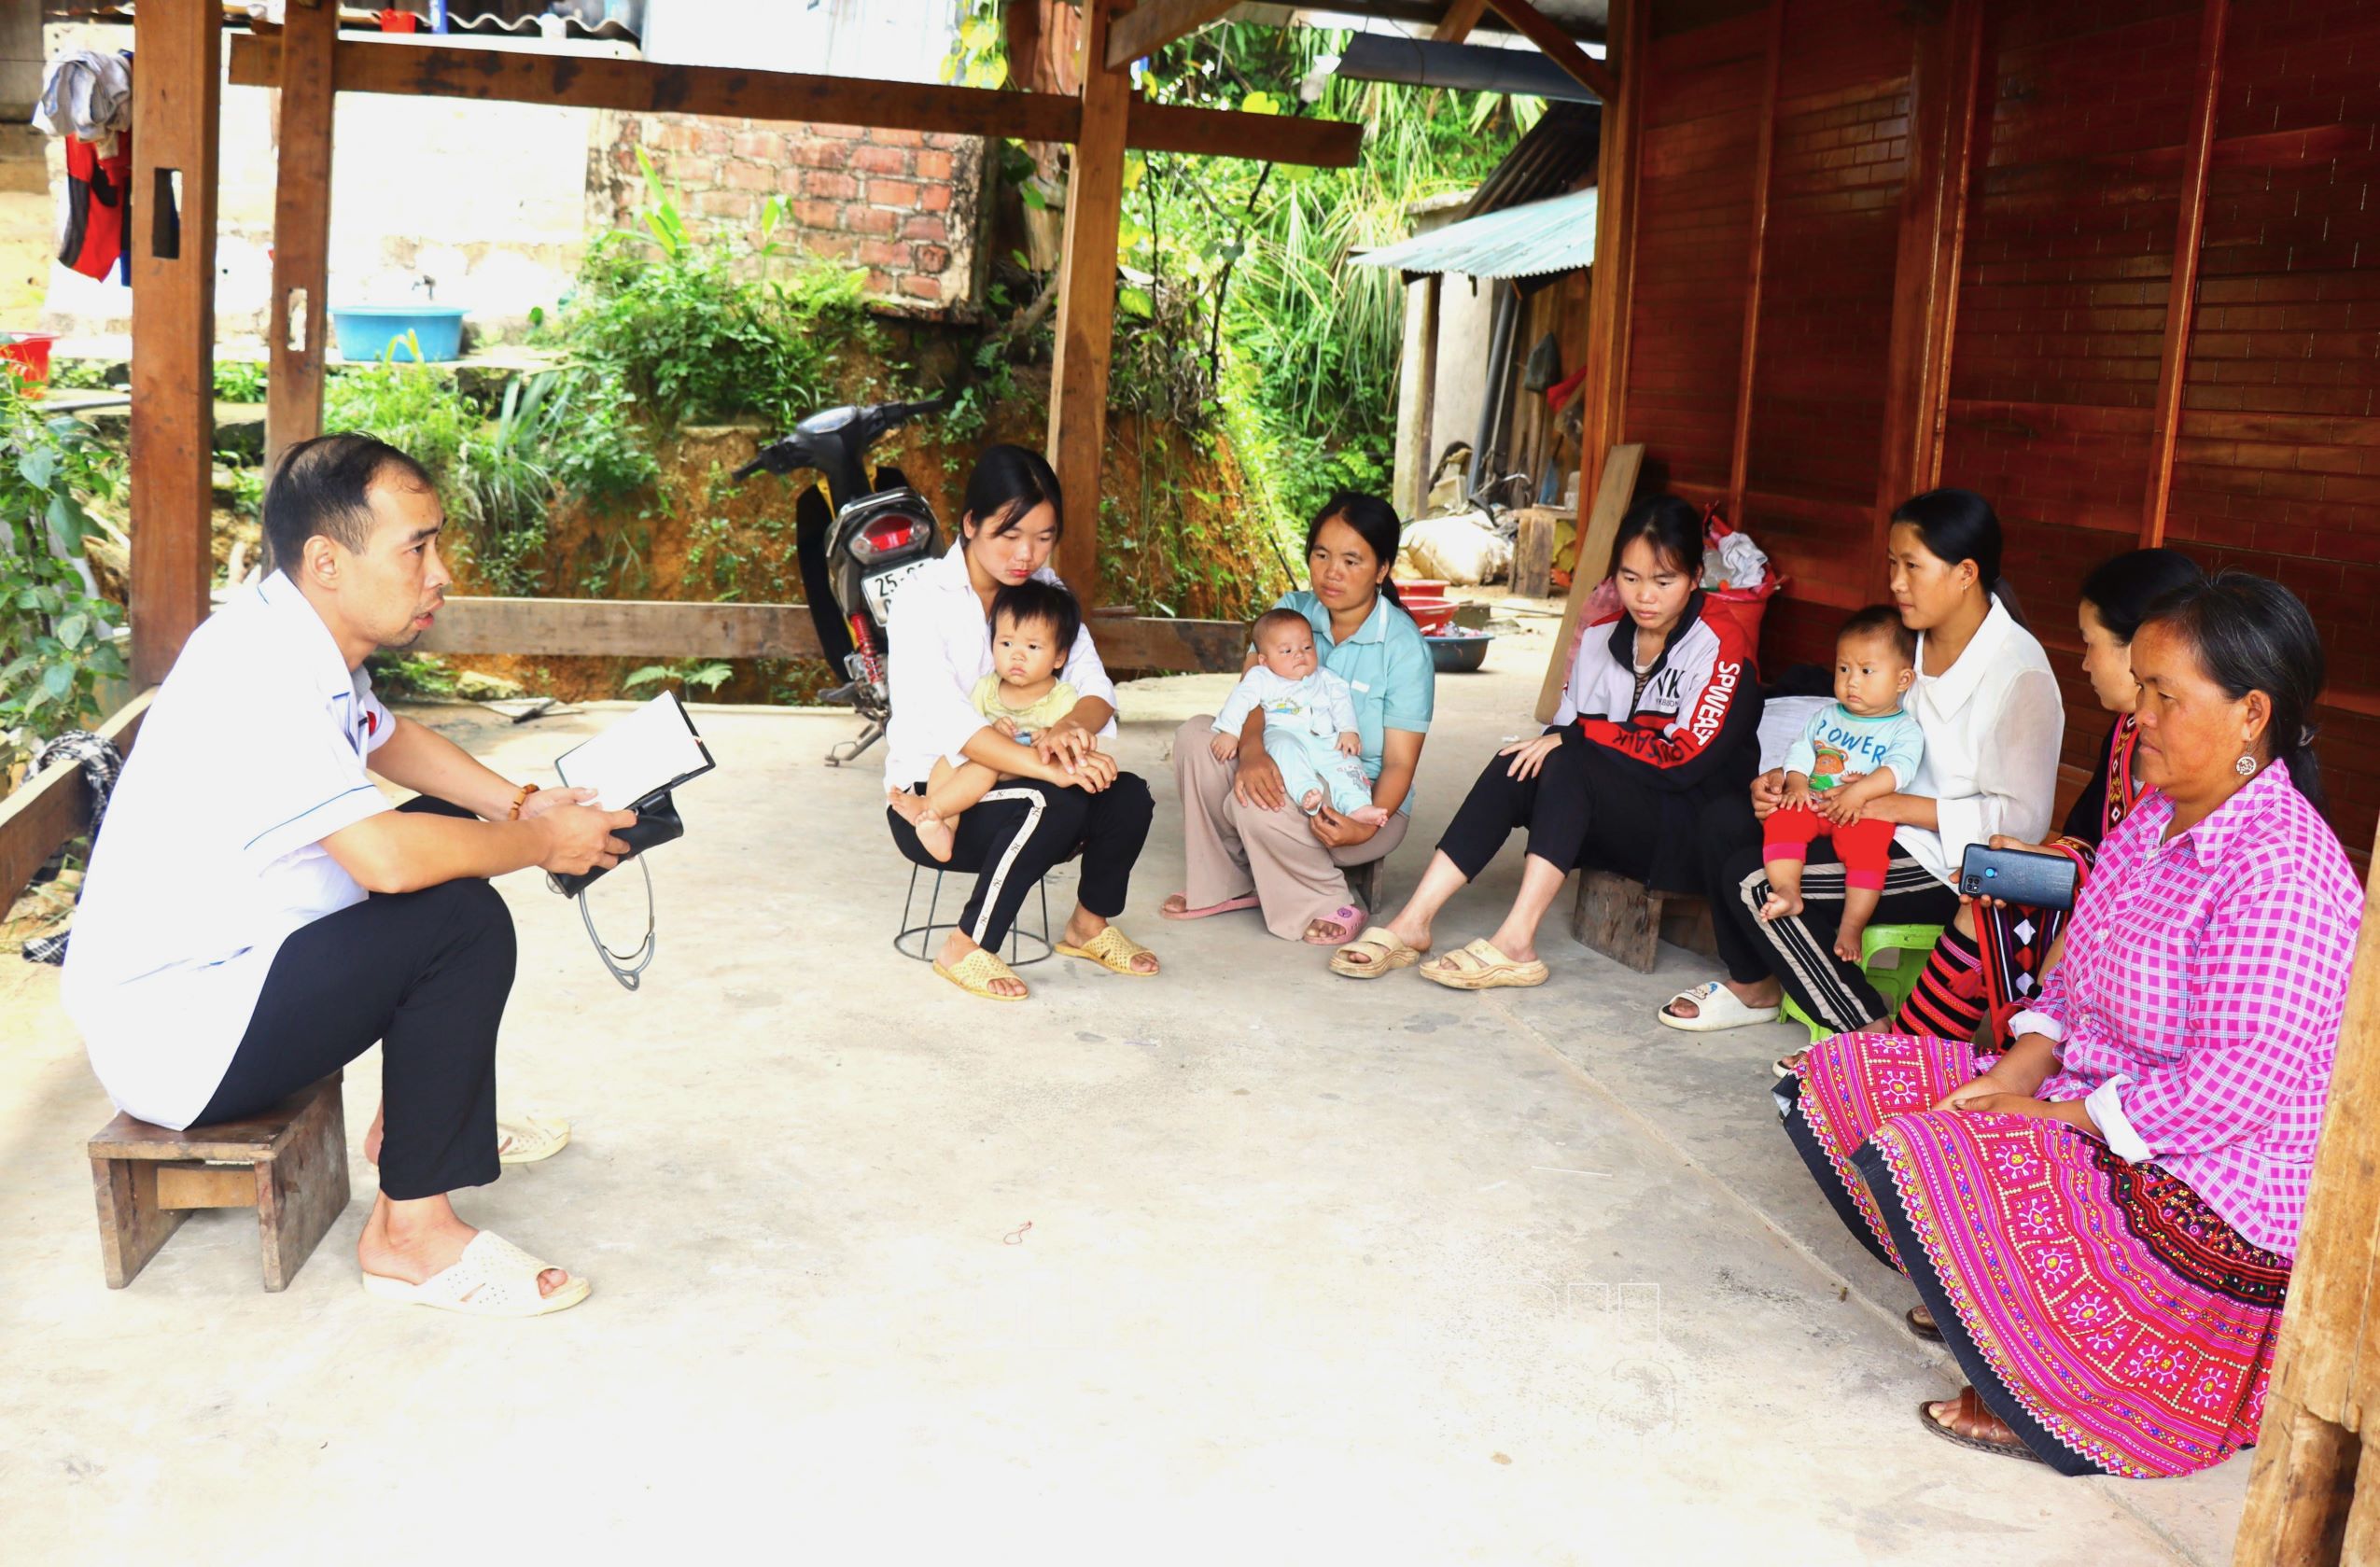 Cán bộ Trạm Y tế xã Pu Sam Cáp (huyện Sìn Hồ) tuyên truyền người dân xóa bỏ hủ tục, tin vào y tế hiện đại.